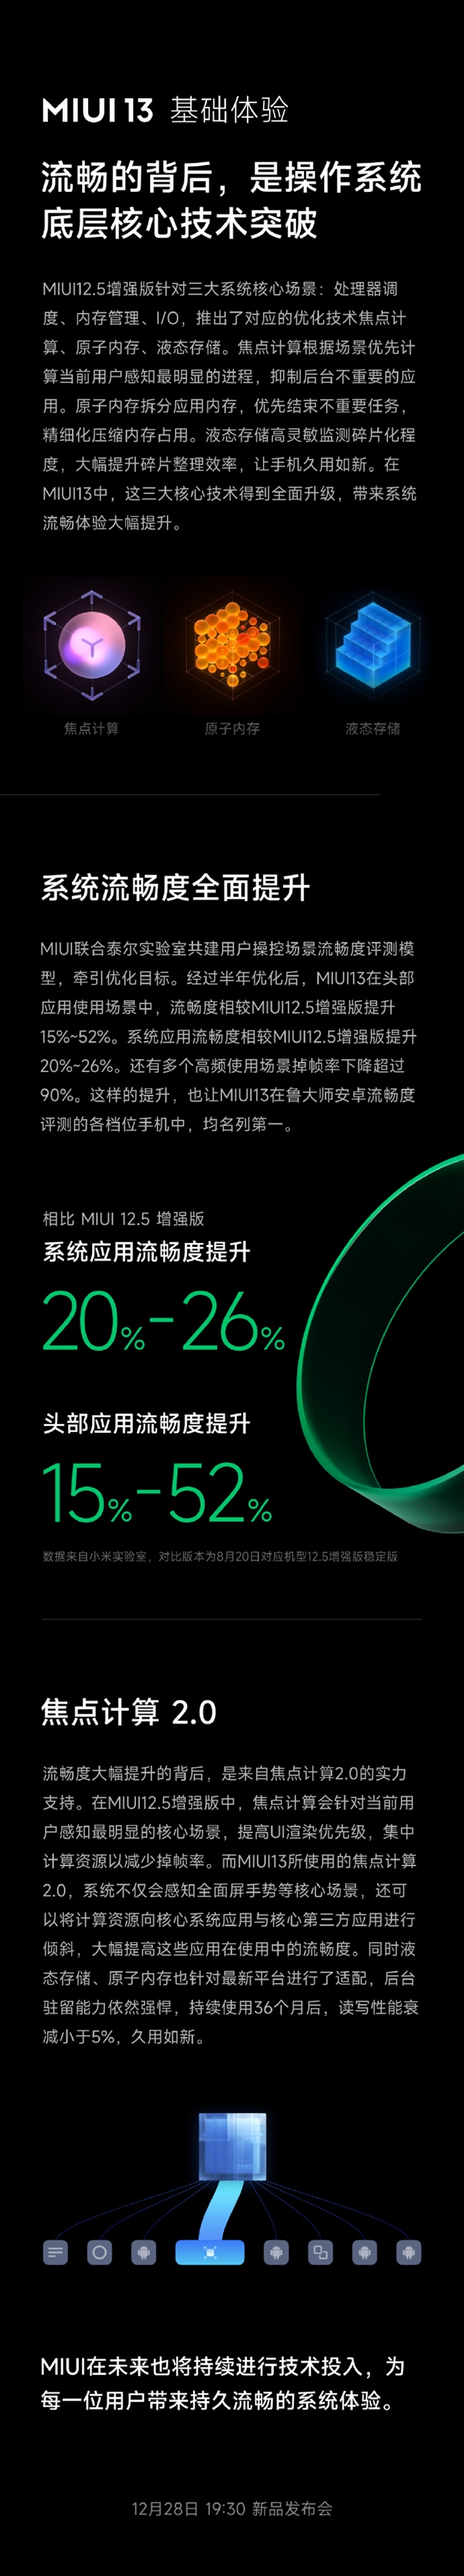 小米MIUI 13将于12月28日发布 官方称36个月读写性能衰减小于5%